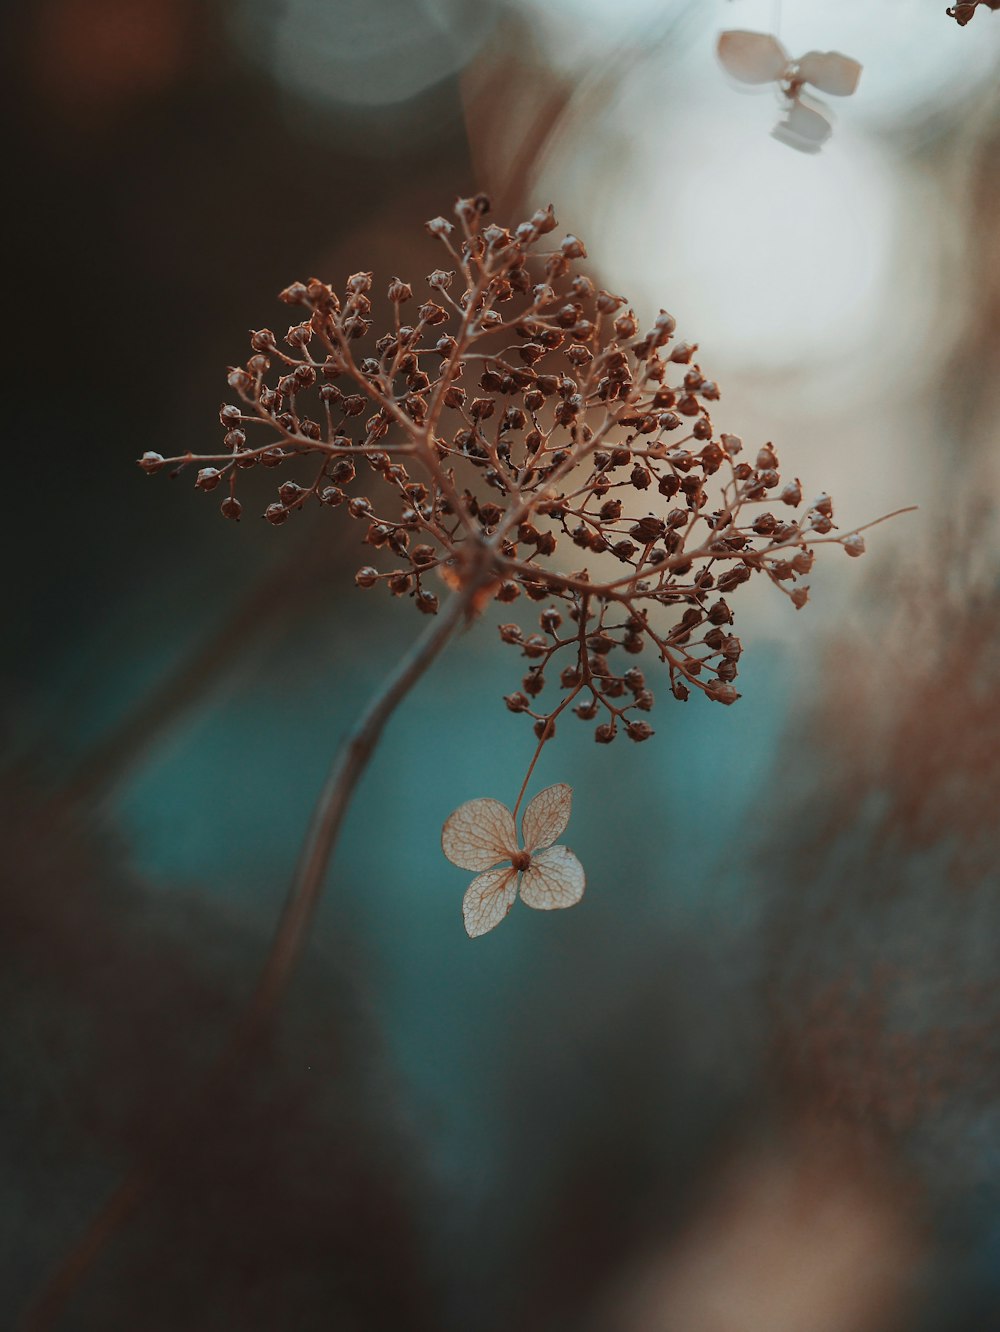 褐色植物と白花の浅焦点撮影